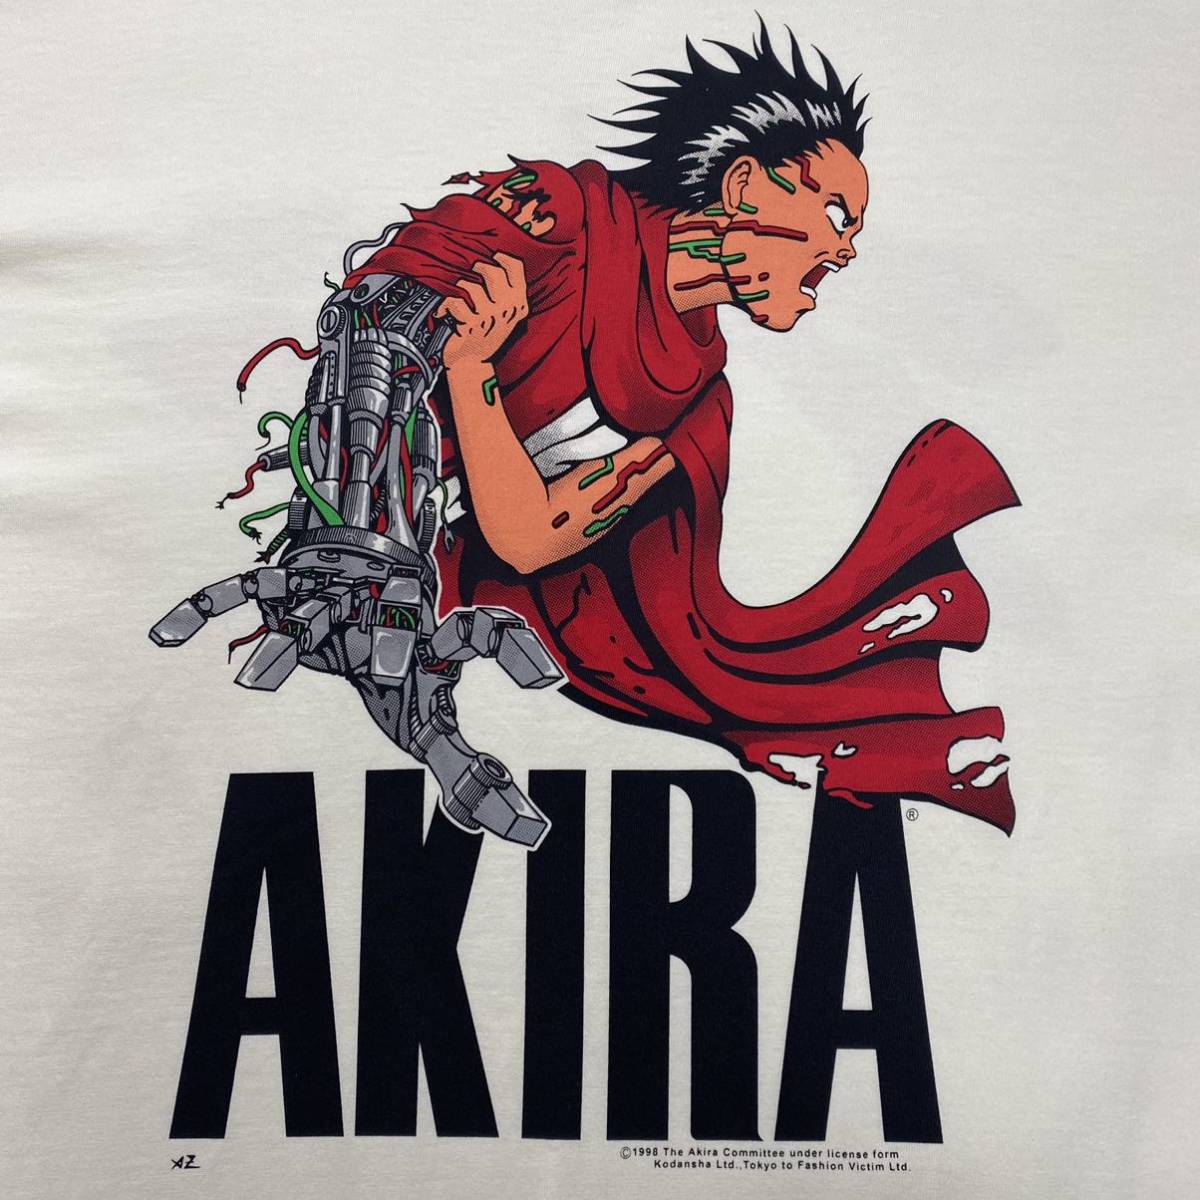 アキラ Akira 鉄雄 Tシャツ イラスト キャラクター 売買されたオークション情報 Yahooの商品情報をアーカイブ公開 オークファン Aucfan Com